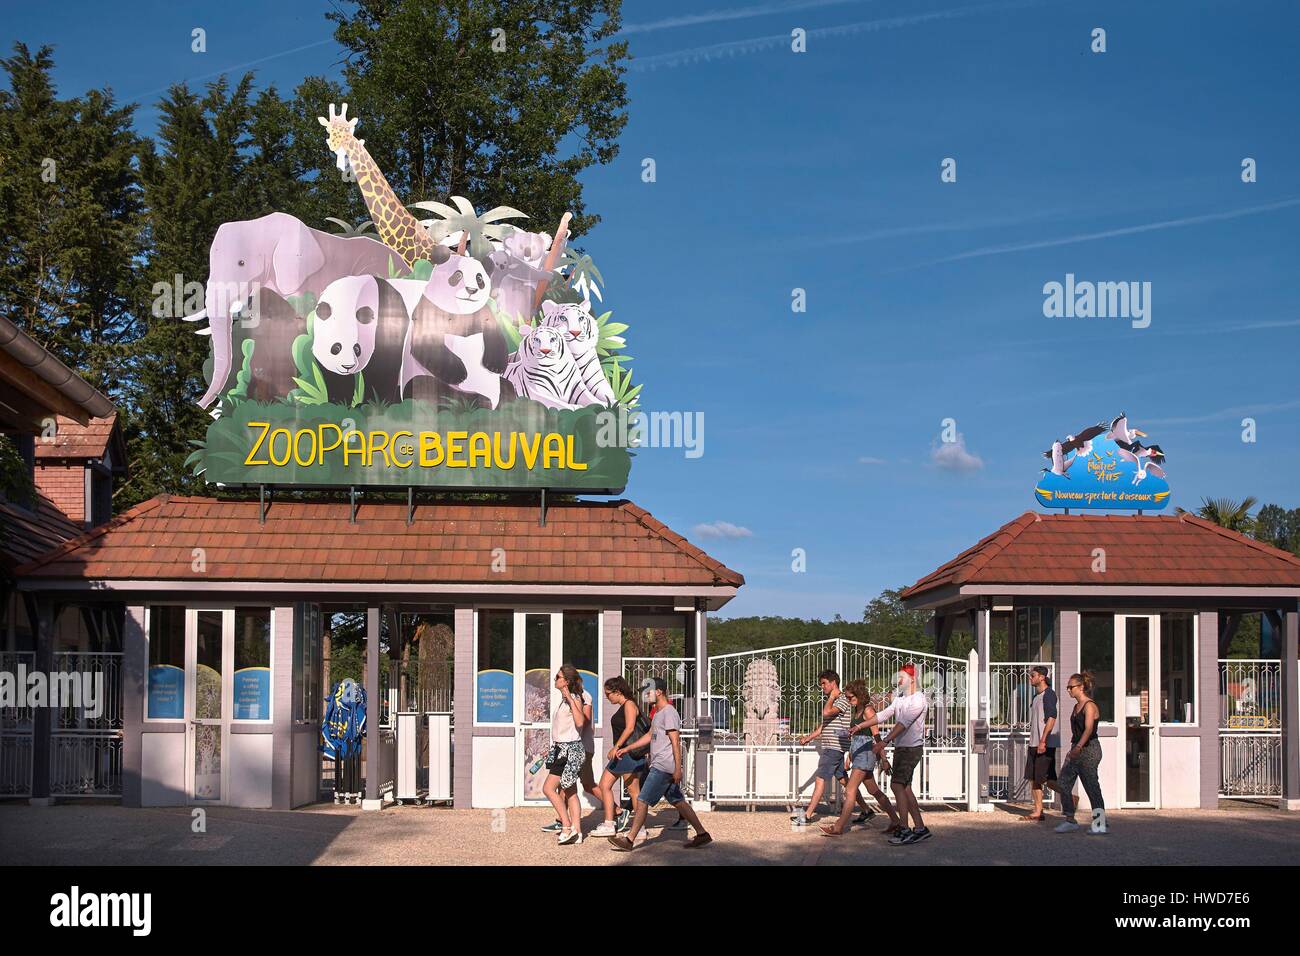 France, Loir et Cher, St Aignan Sur Cher, ZooParc de Beauval, Retail Brand at the park entrance Stock Photo